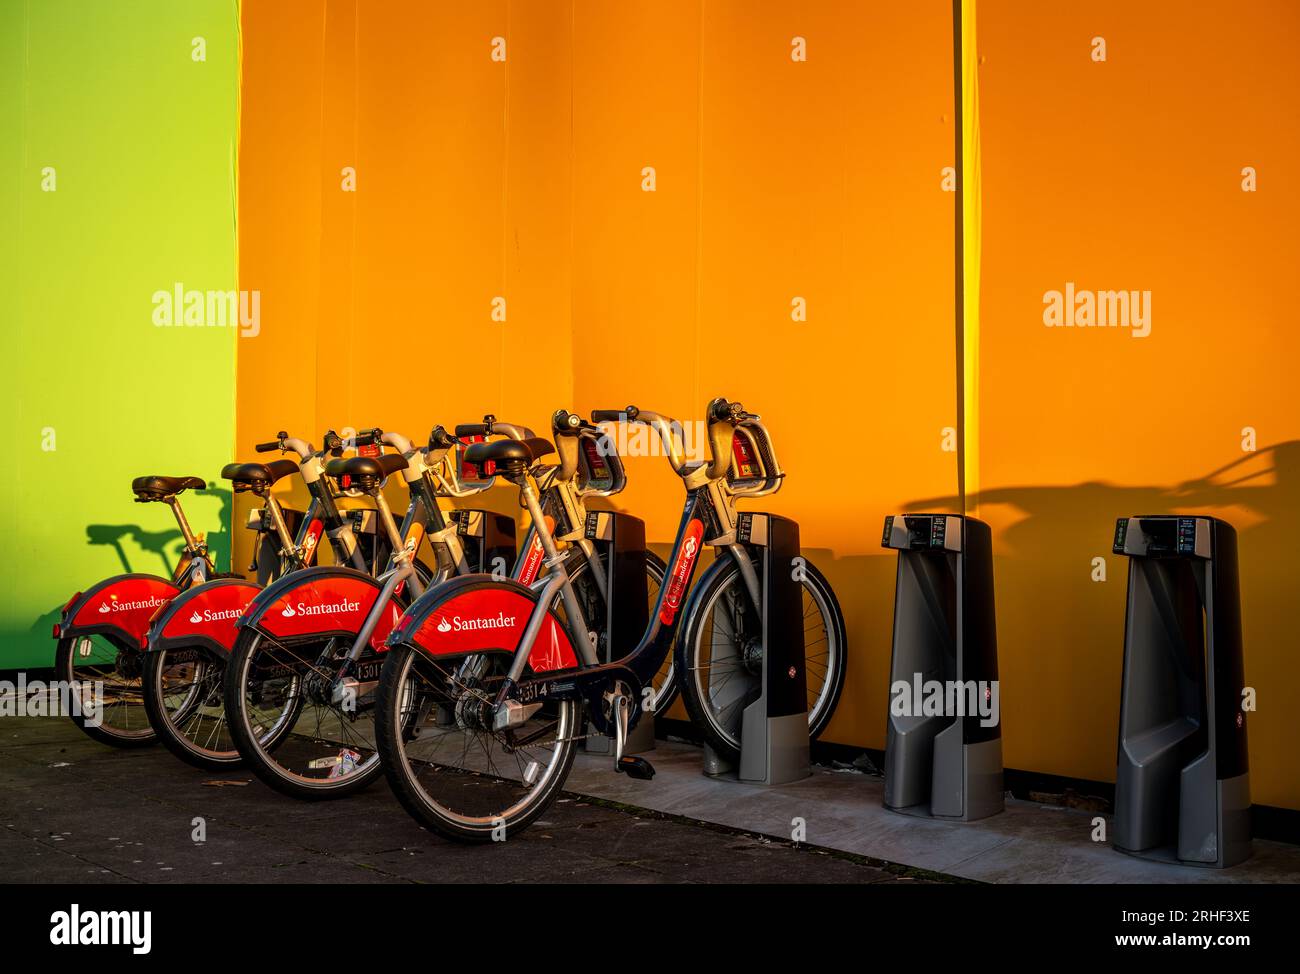 Londra, Regno Unito: Noleggio biciclette presso una stazione di attracco vicino alla stazione della metropolitana di Southwark a Londra al tramonto. Queste biciclette a noleggio sono sponsorizzate da Santander Foto Stock